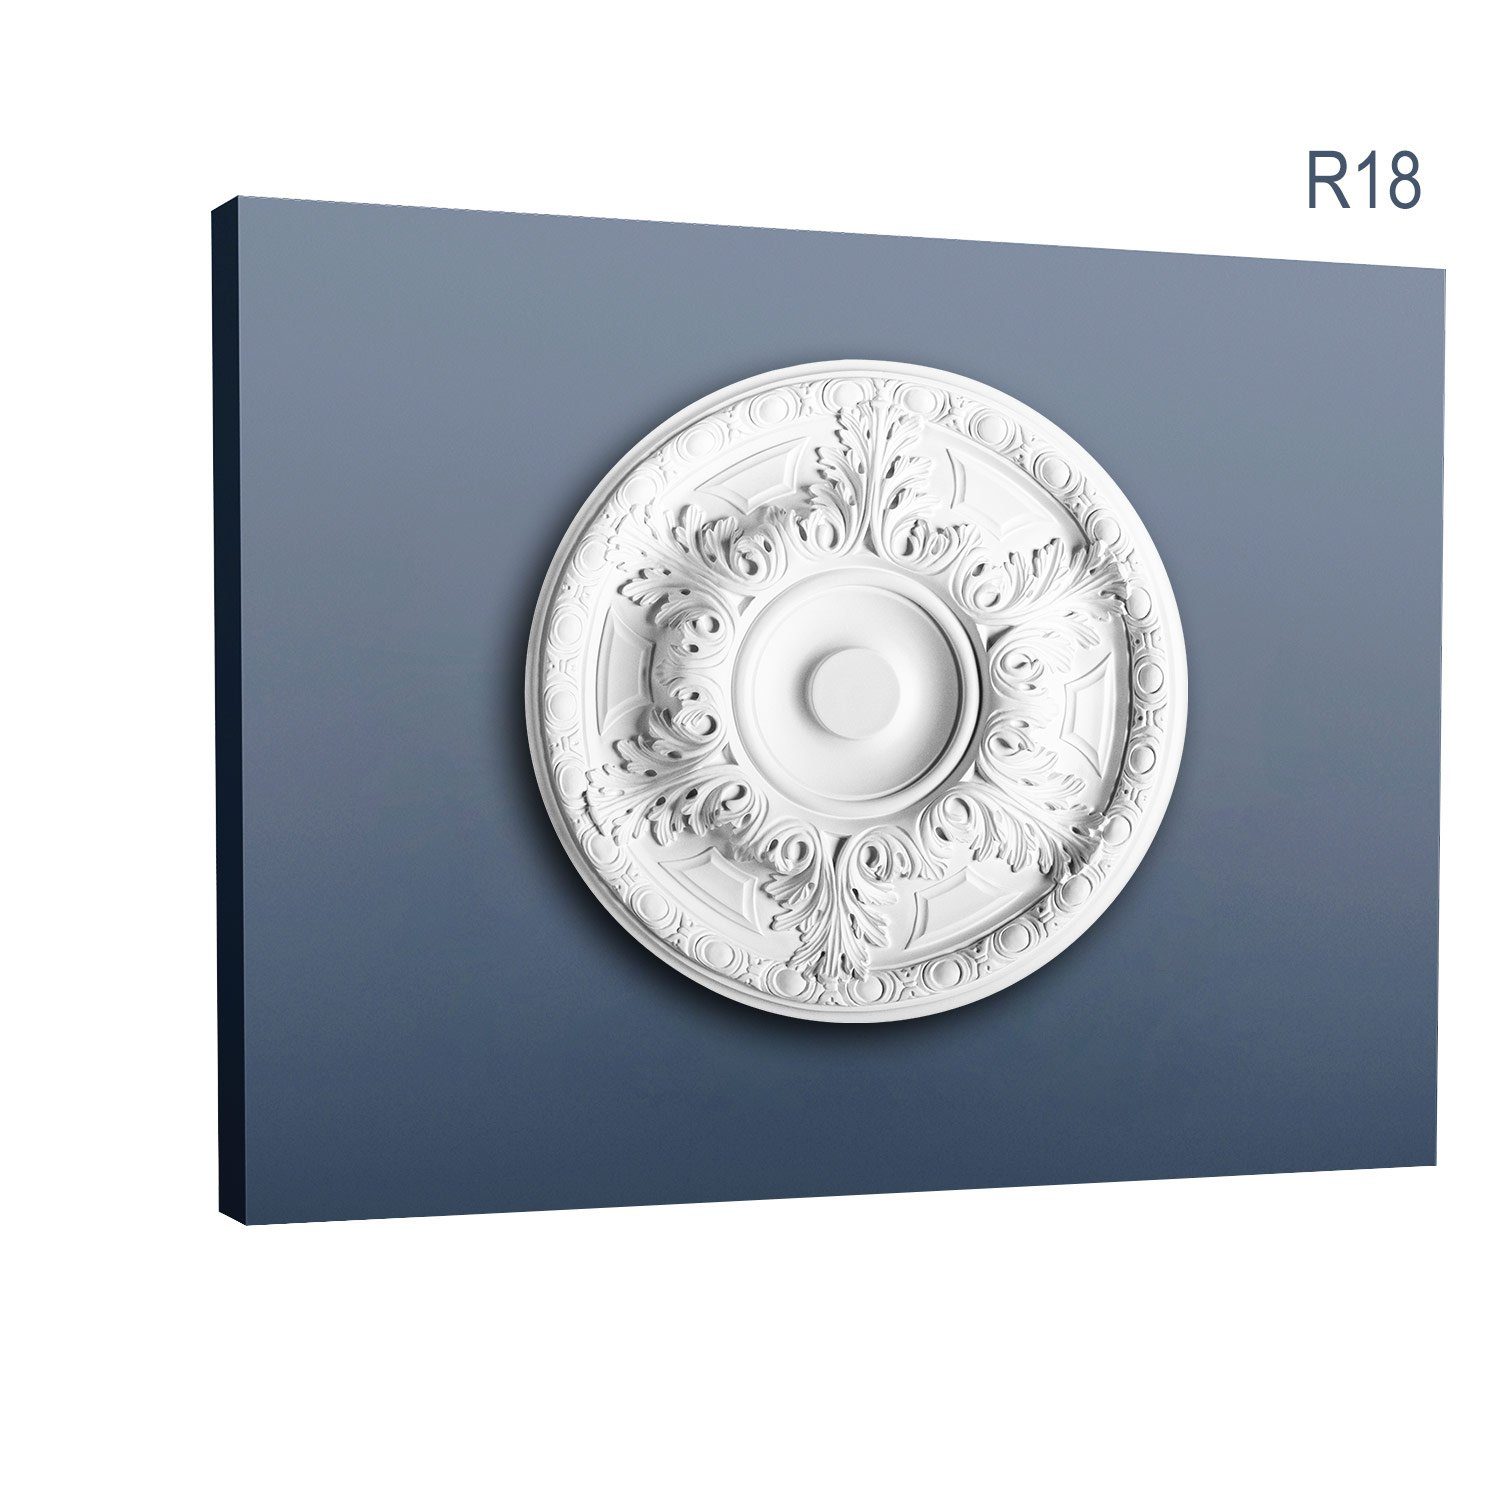 Orac Decor Decken-Rosette R18 (Rosette, 1 St., Deckenrosette, Medallion, Stuckrosette, Deckenelement, Zierelement, Durchmesser 49 cm), weiß, vorgrundiert, Stil: Rokoko / Barock